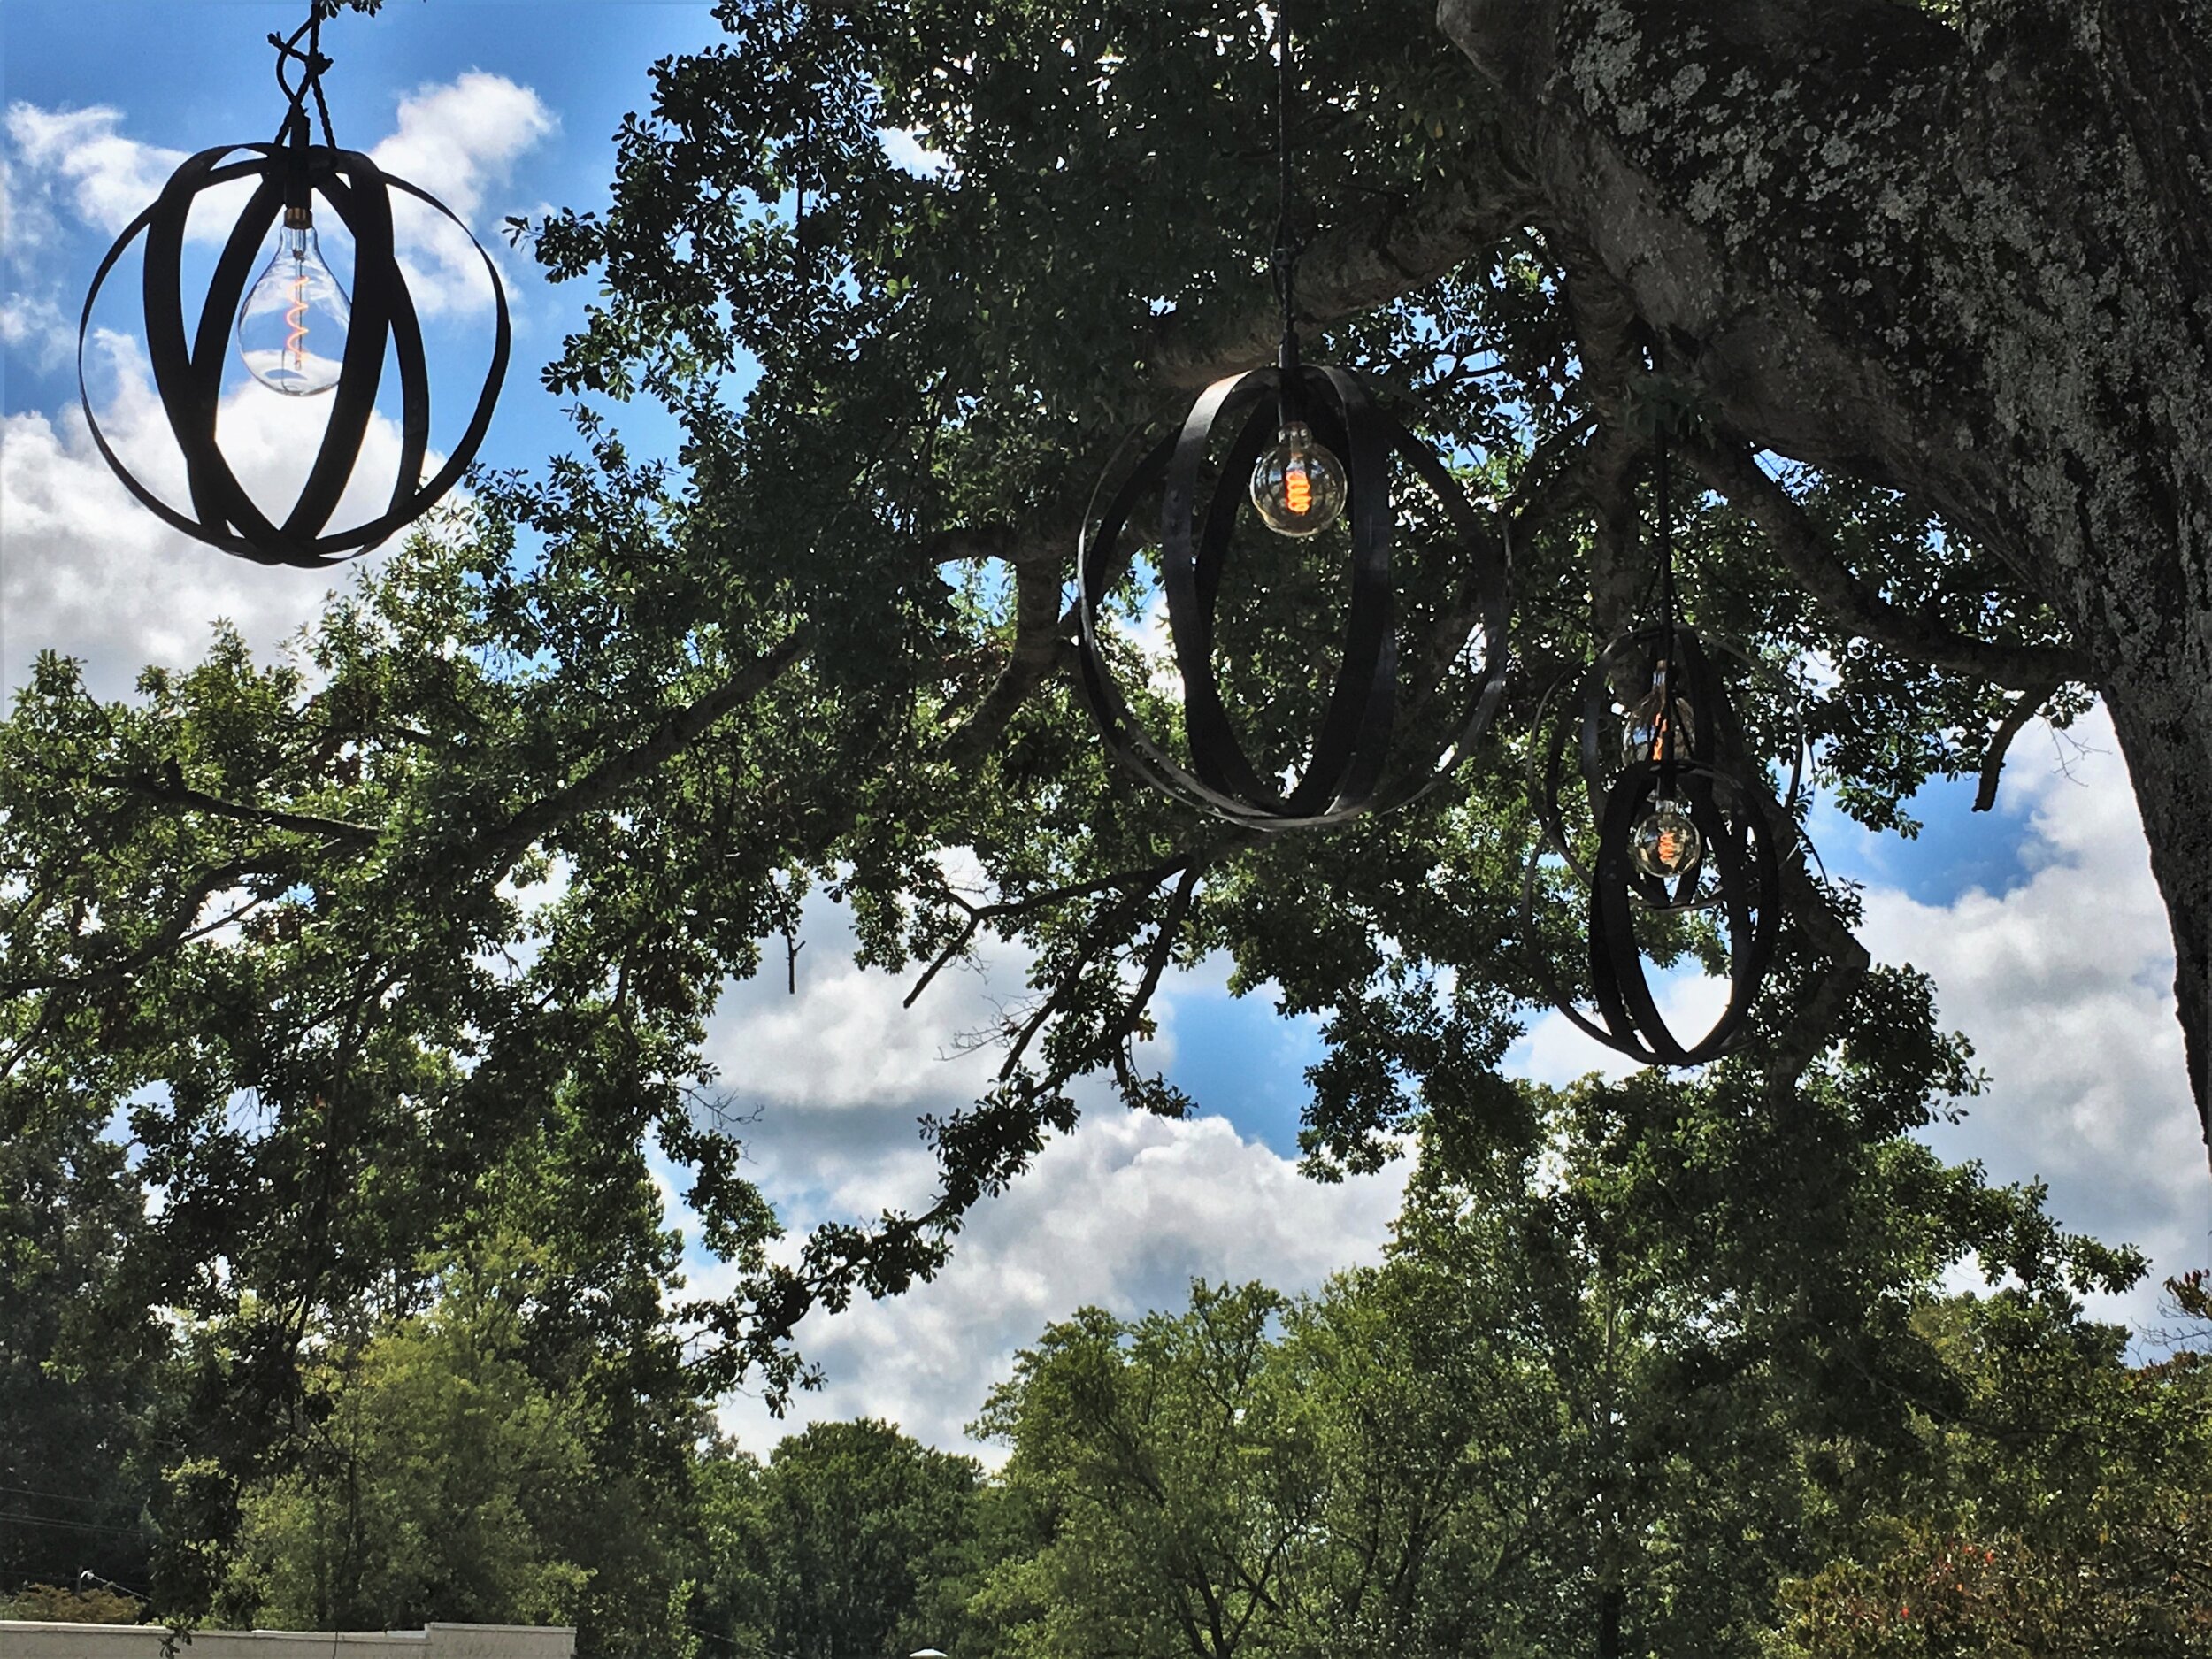 Hanging lanterns in tree